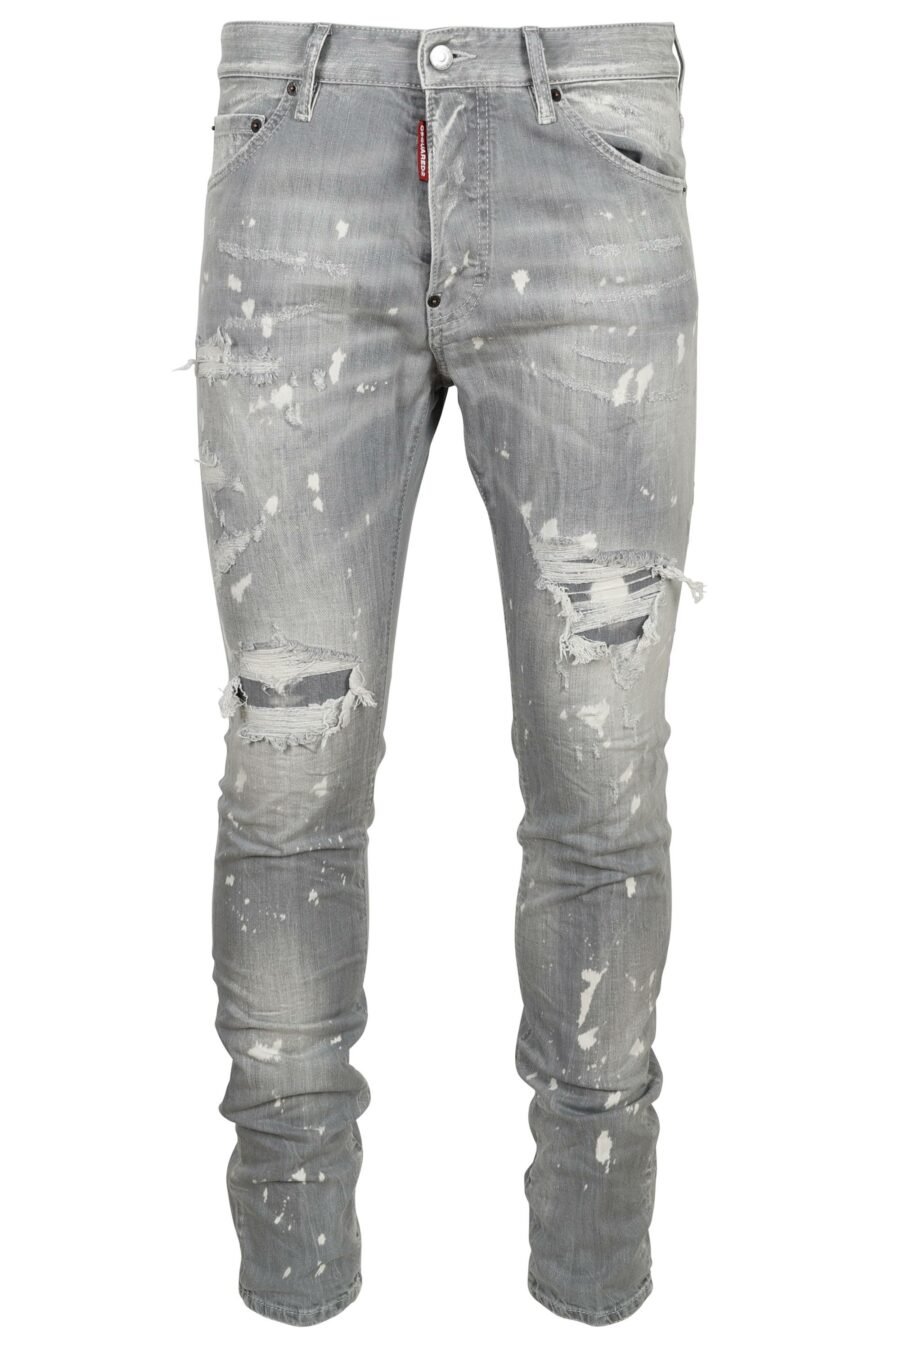 Graue Jeanshose für coole Typen mit weißer Farbe und Rissen - 8054148474218